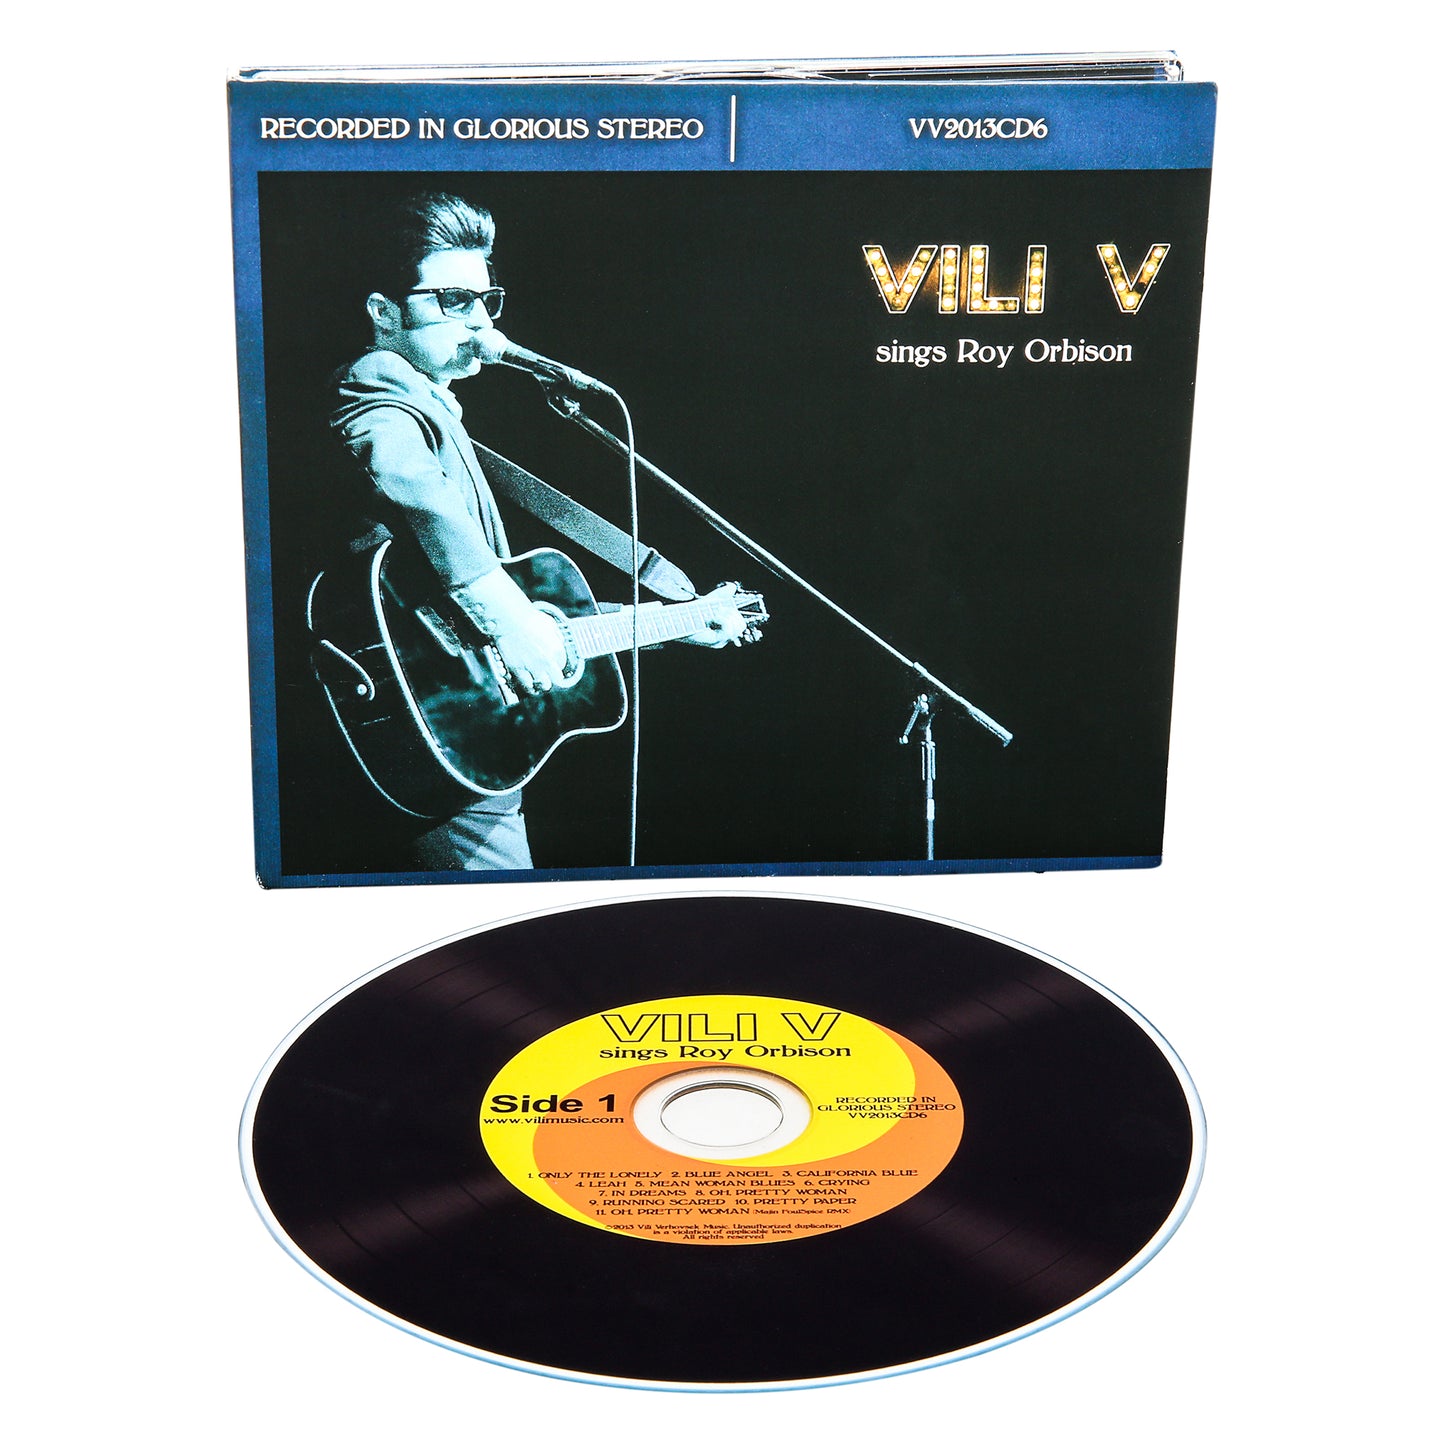 Vili V sings Roy Orbison - (CD - Physical)